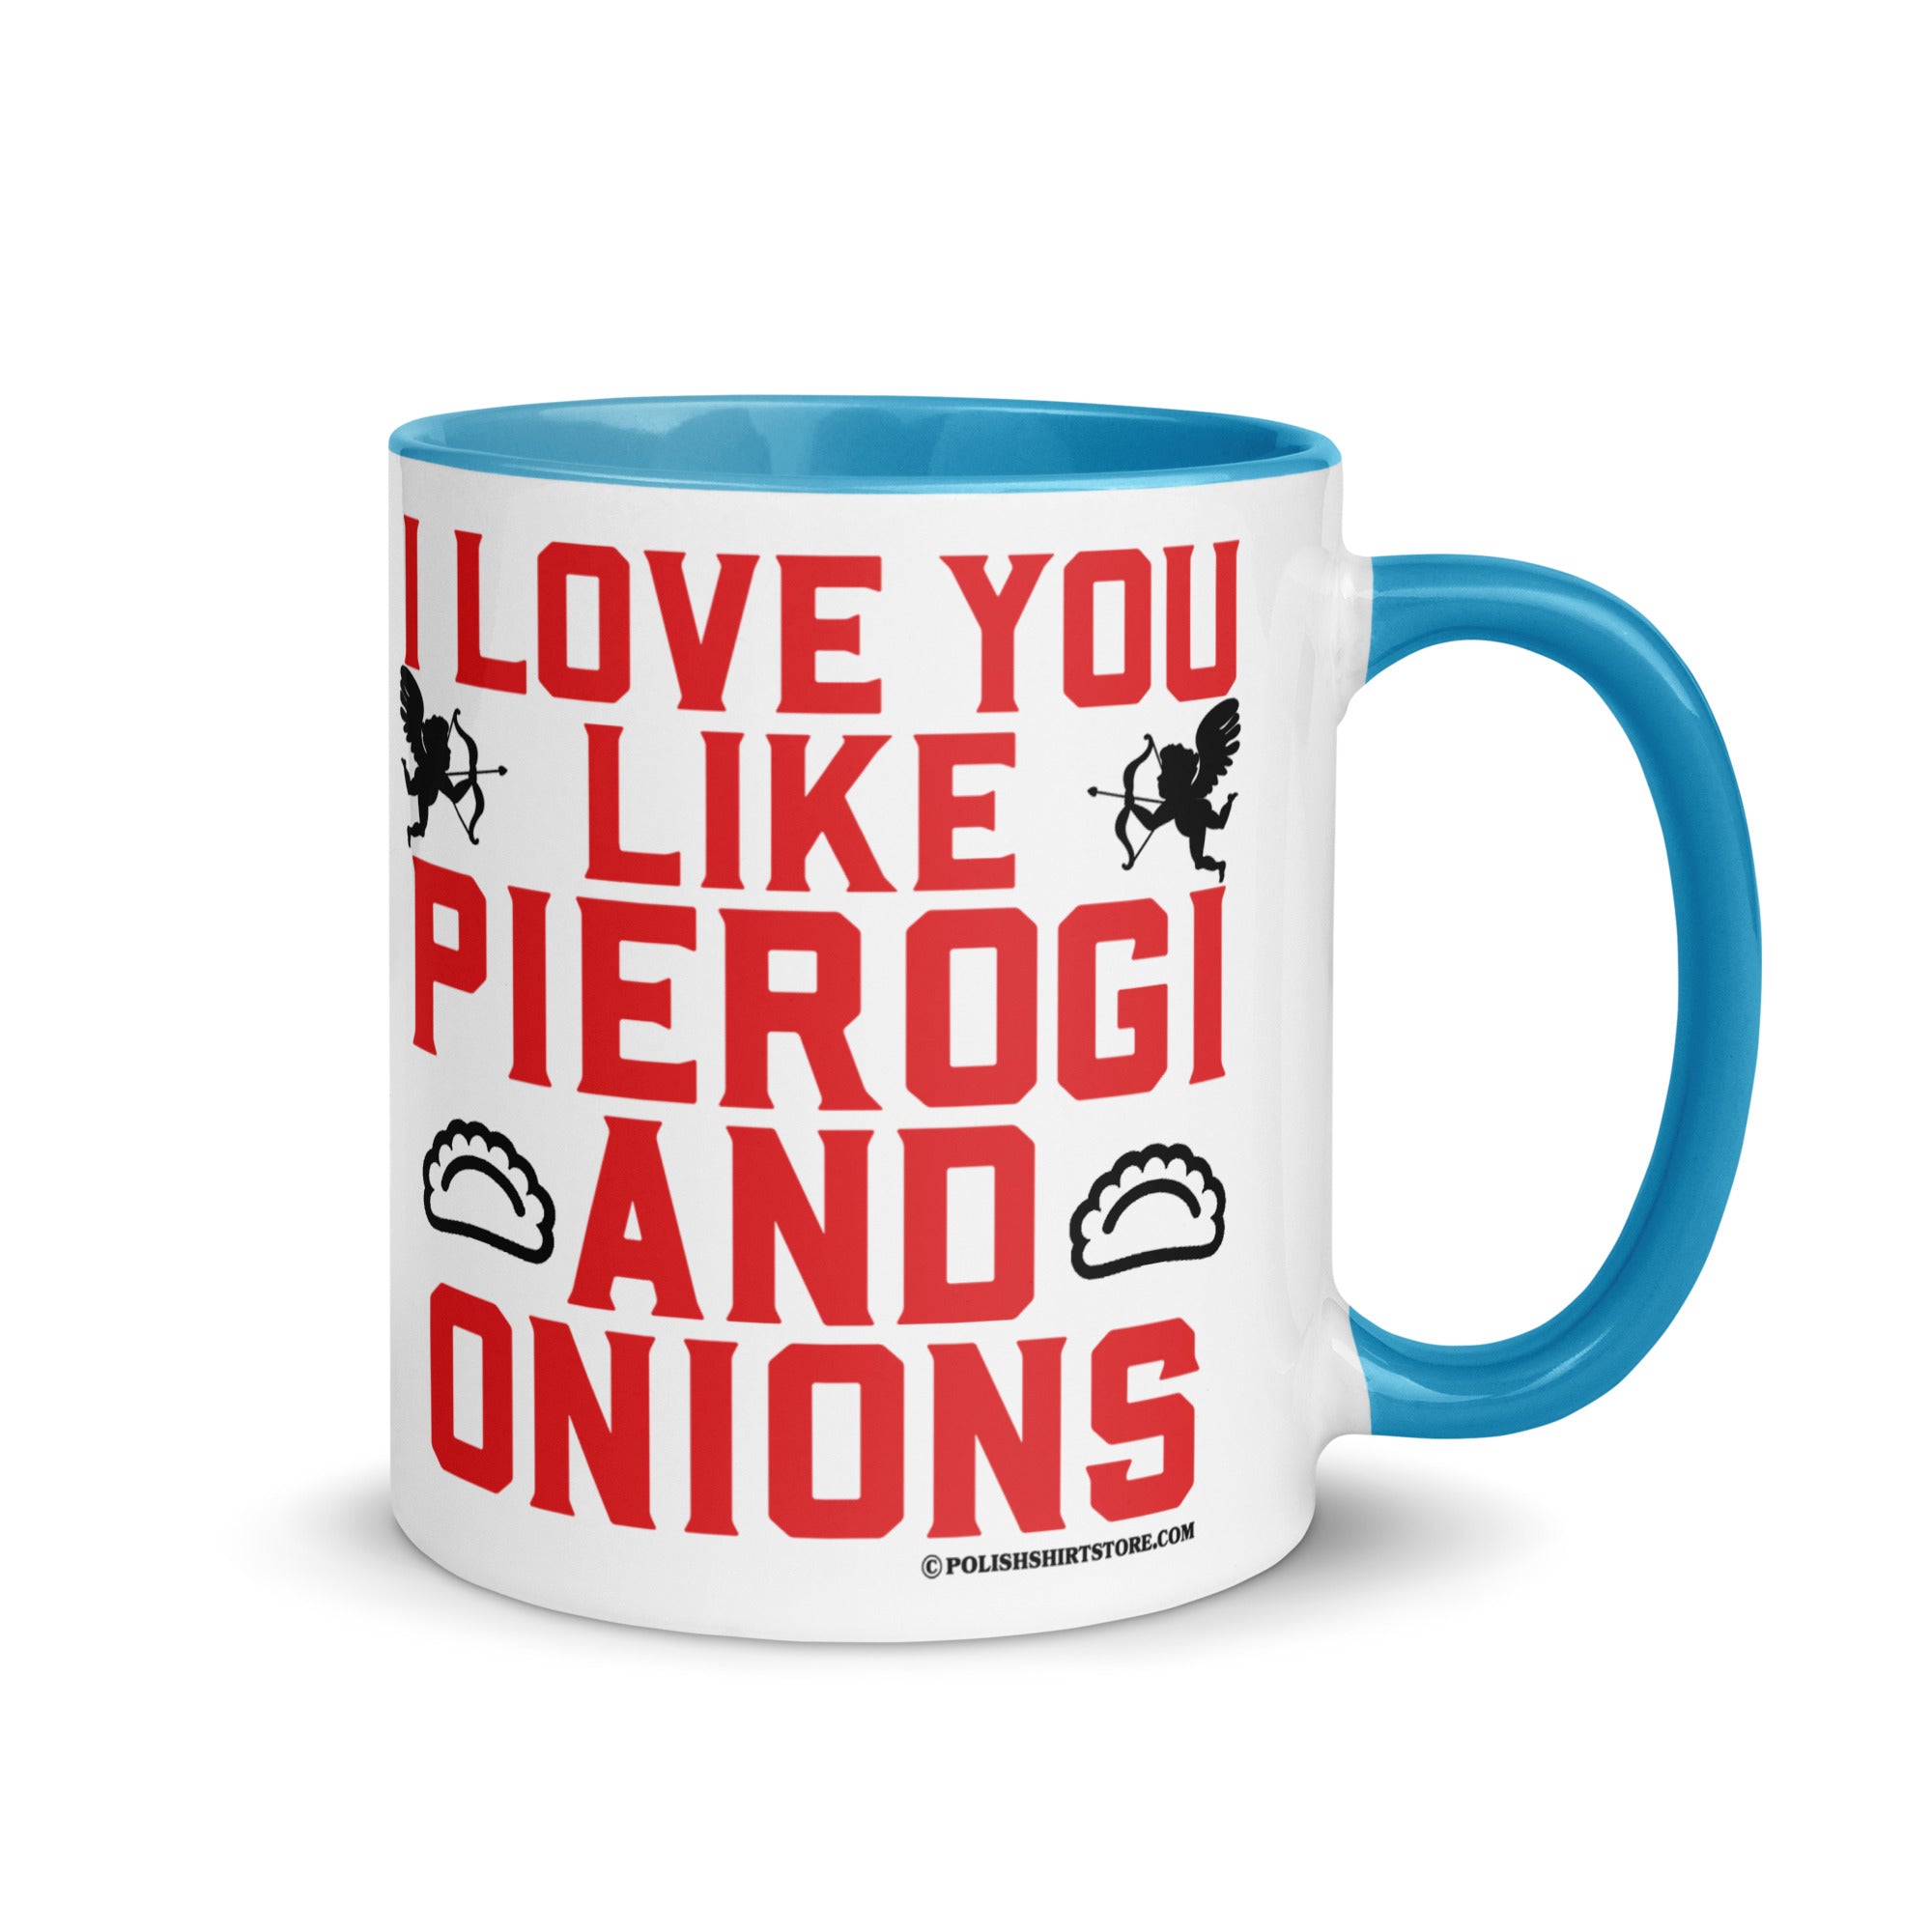 I Love You Like Pierogi And Onions Coffee Mug with Color Inside  Polish Shirt Store Blue 11 oz 